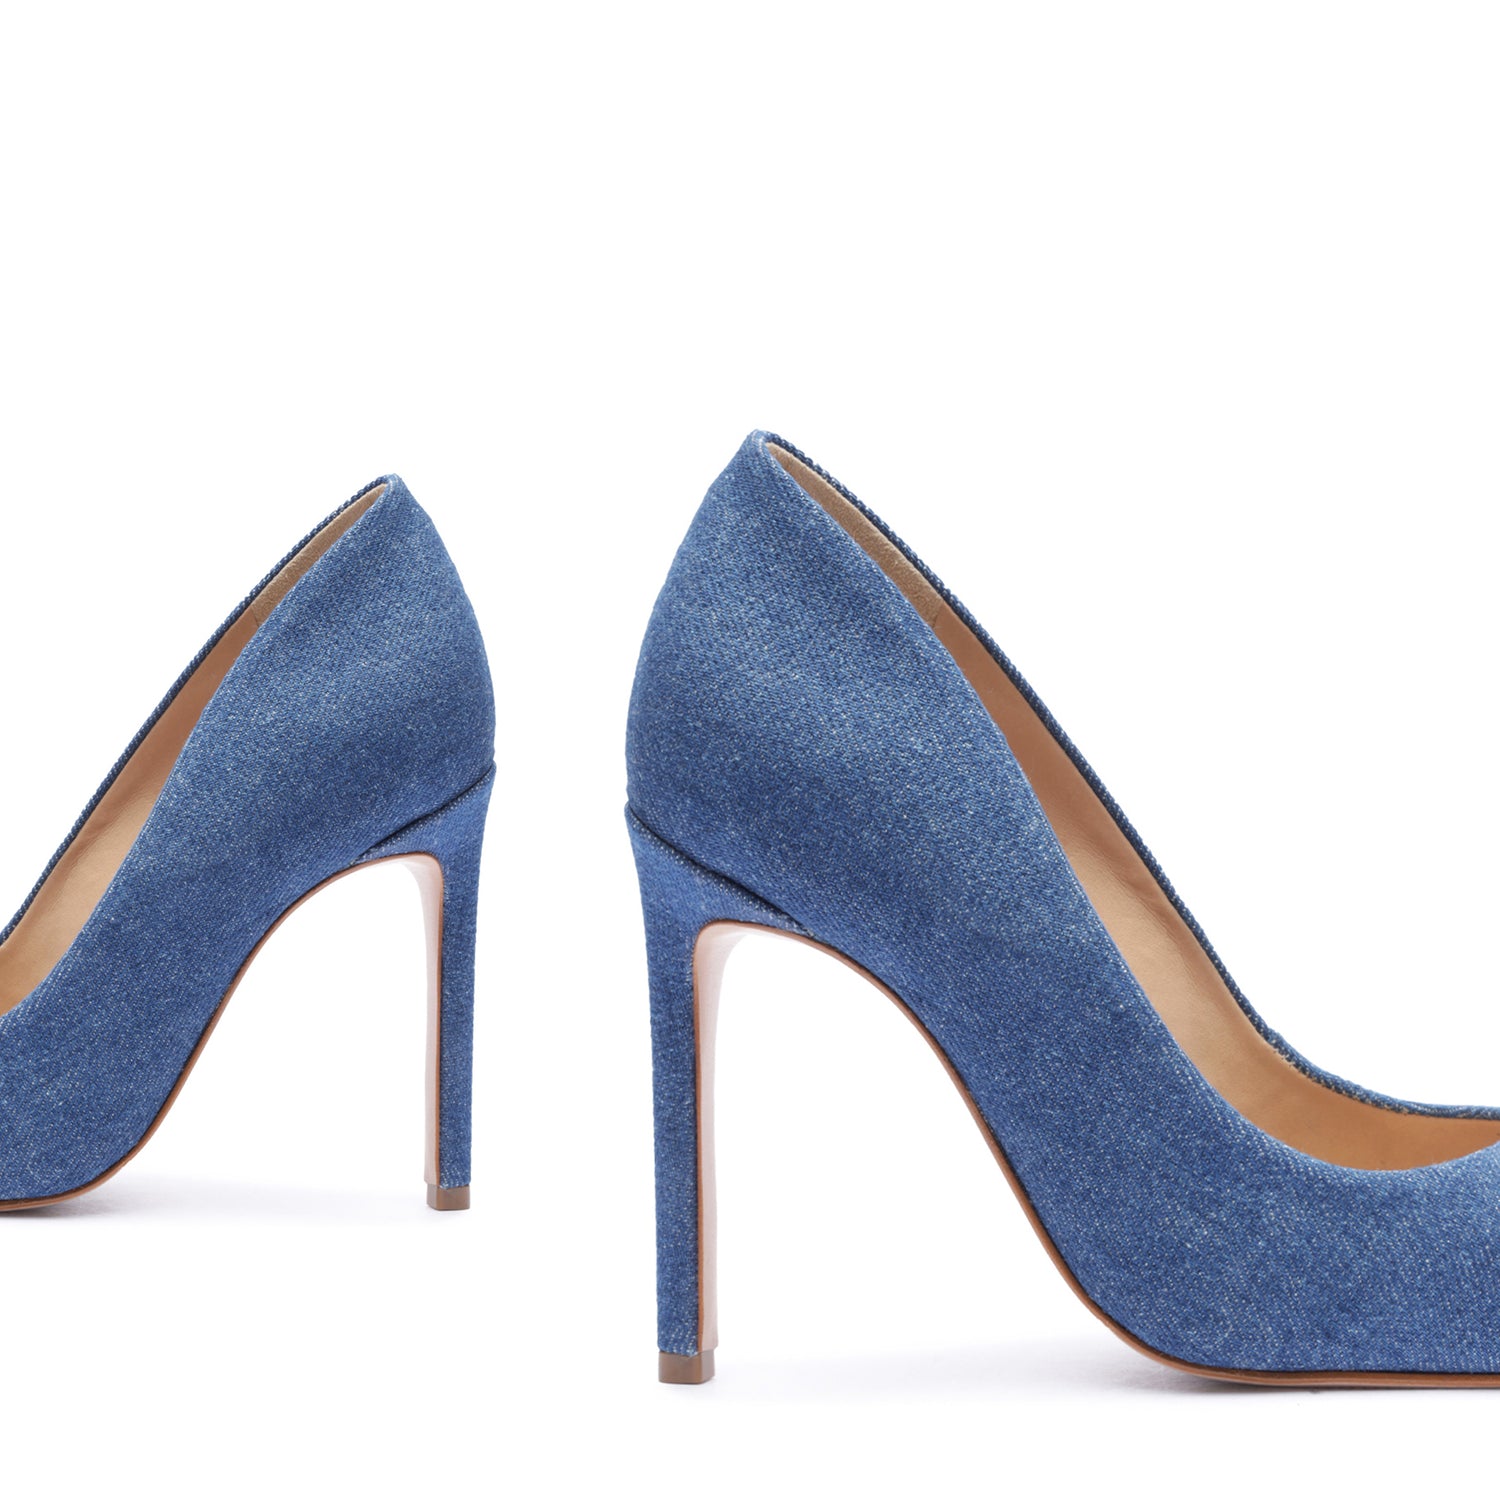 ASOS DESIGN Pria embellished slingback heeled shoes in denim | ASOS